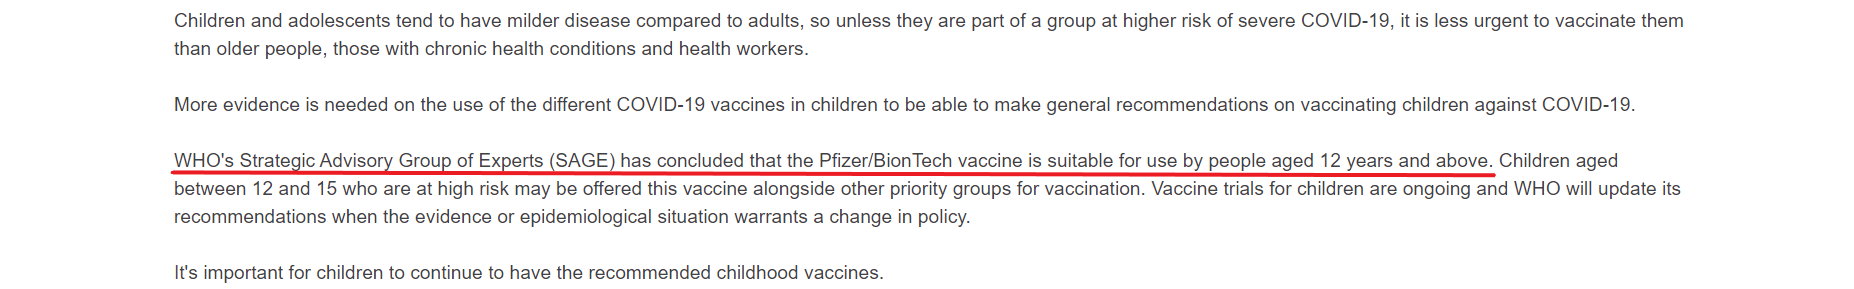 Fragment nowej wersji tekstu na stronie WHO. Zaznaczono fragment o dopuszczeniu możliwości szczepienia dzieci pow. 12 roku życia szczepionką firm Pfizer/BioNTech